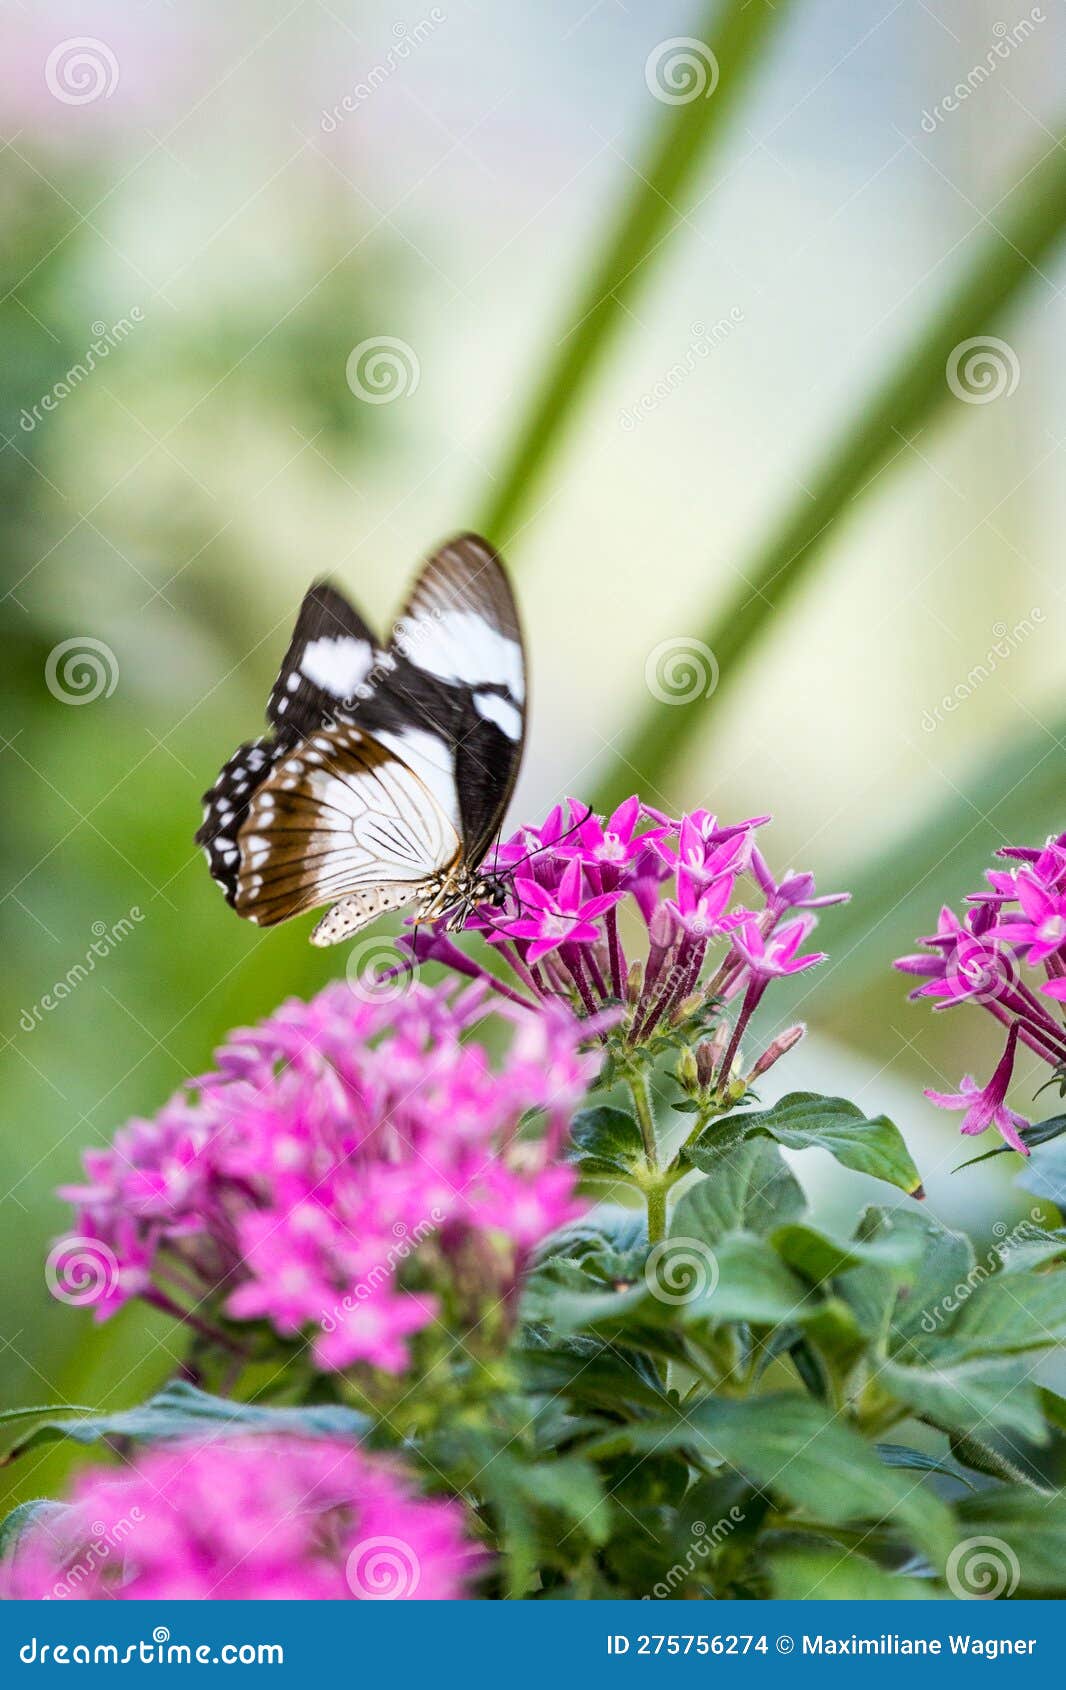 Cierre de néctar de néctar de mariposa blanca y negra de una flor rosa.